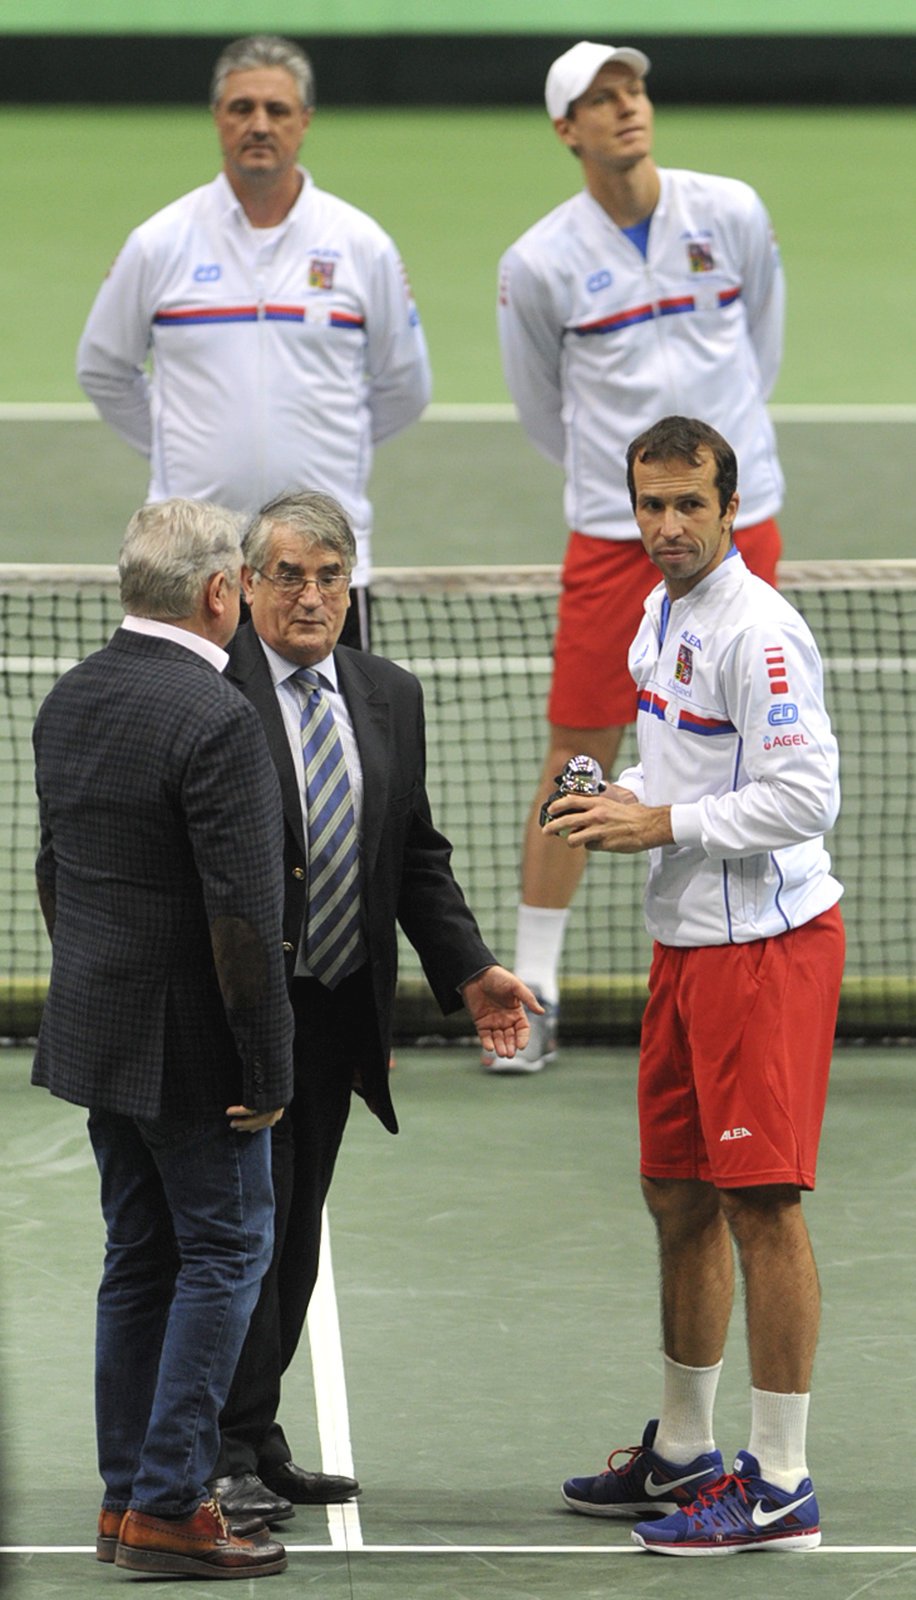 Radek Štěpánek dostal před sobotní čtyřhrou od prezidenta Tennis Europe Jacquese Duprého Cenu za oddanst Davis Cupu